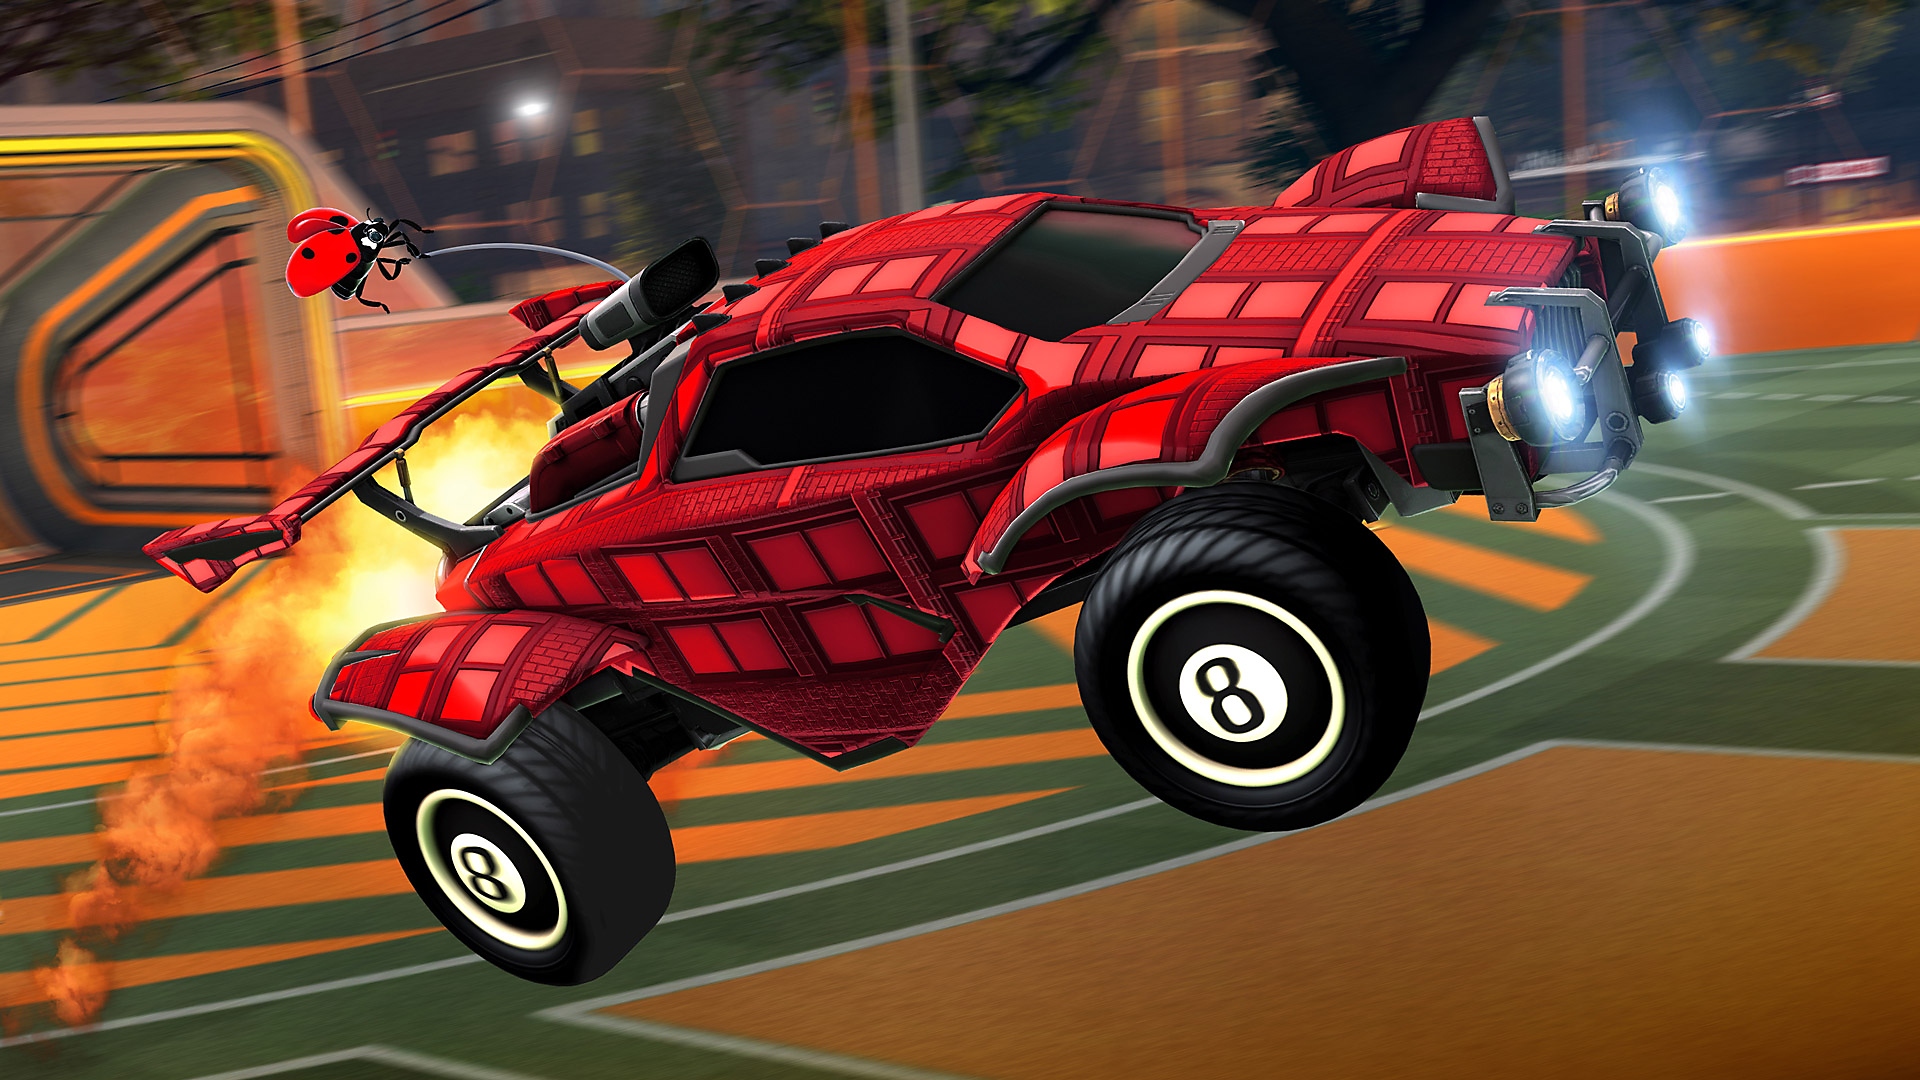 ภาพหน้าจอ Rocket League แสดงให้เห็นรถสีแดง